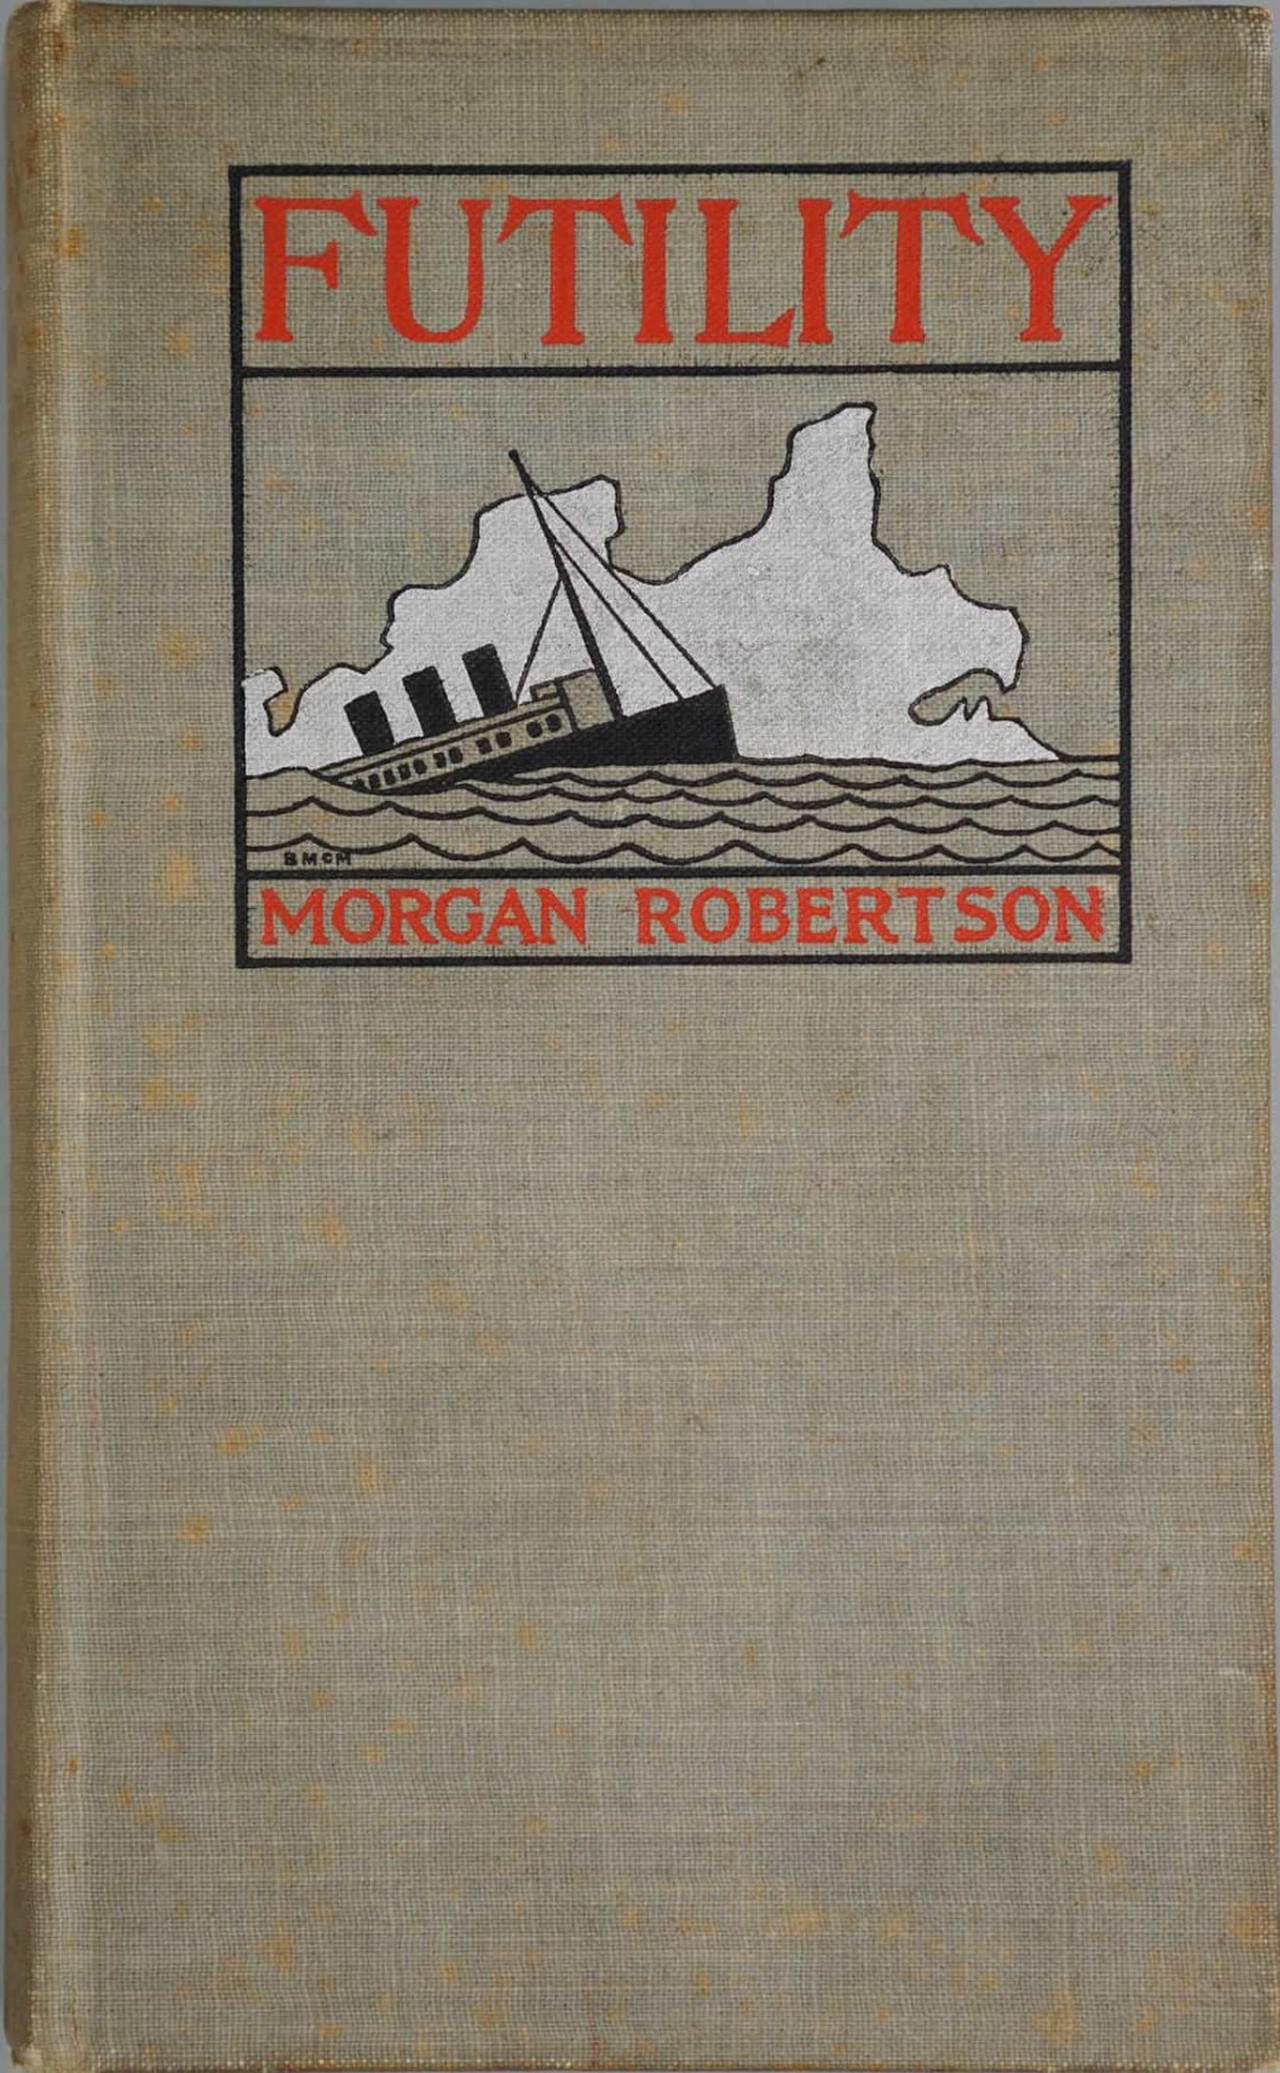 <p><strong>&bdquo;Гибелта на Титан&ldquo; (1898) - Морган Робъртсън</strong><br />
Първоначално публикуван под заглавието &bdquo;Напразност&ldquo;, романът на Робъртсън разказва историята за пътнически кораб на име Титан, който се ударил в айсберг и потънал в студените води на Атлантическия океан. Подобно на Титаник, Титан също е описан в книгата на Робъртсън като най-големия кораб на своето време. И както в истинската трагедия, хиляди хора също умират.</p>